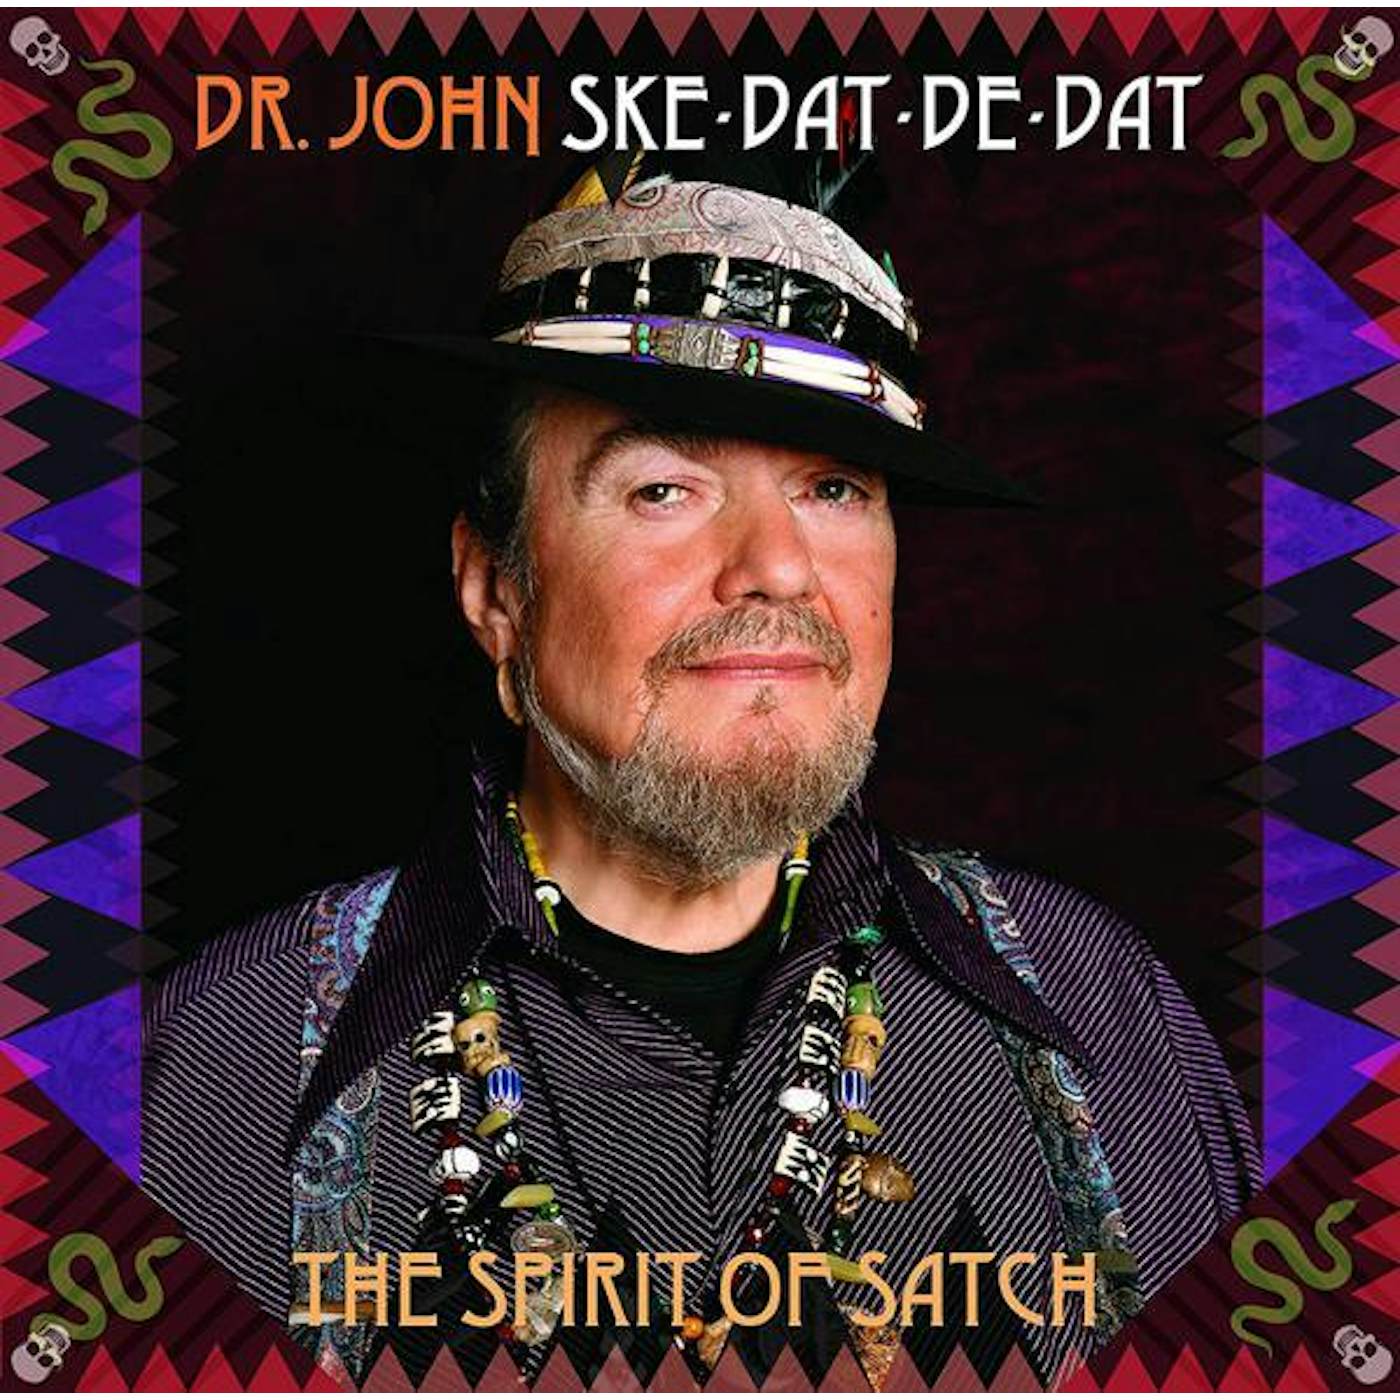 Dr. John SKE DAT DE DAT: THE SPIRIT OF SATCH Vinyl Record